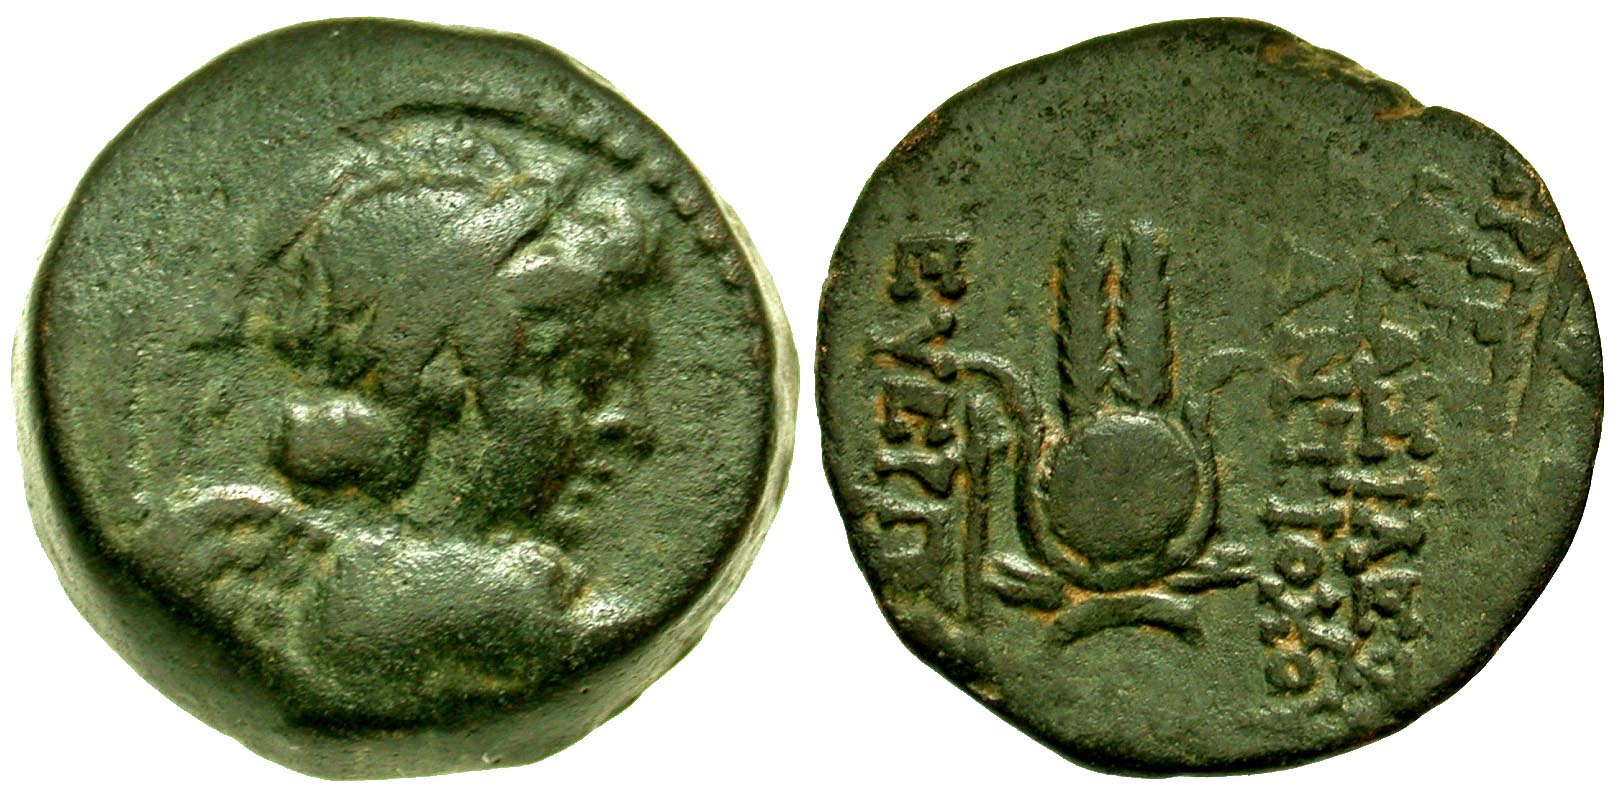 Seleukid Kingdom, Antioch. Antiochos VII Euergetes. 138-129 B.C. AE 18. Antioch mint. 